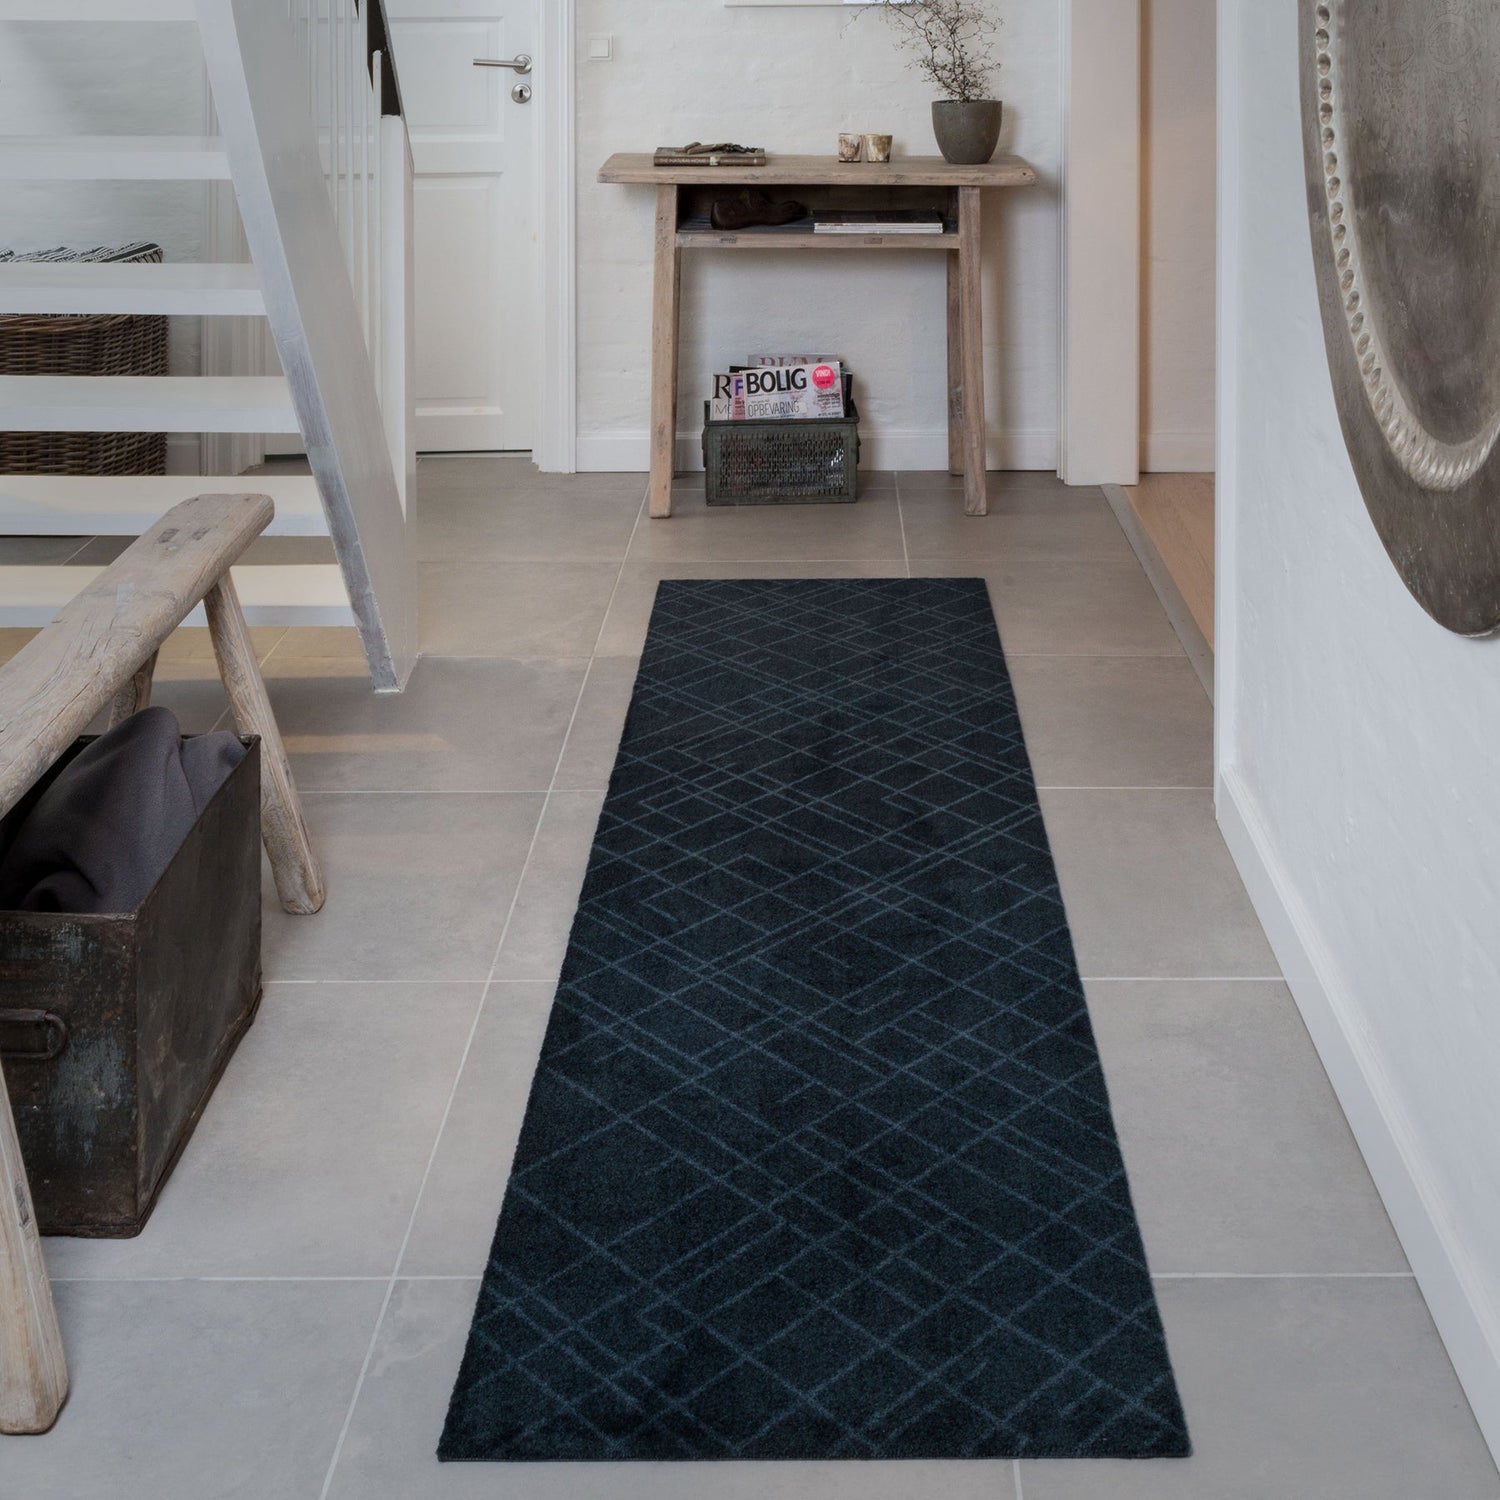 Floor mat 67 x 200 cm lines/dark gray